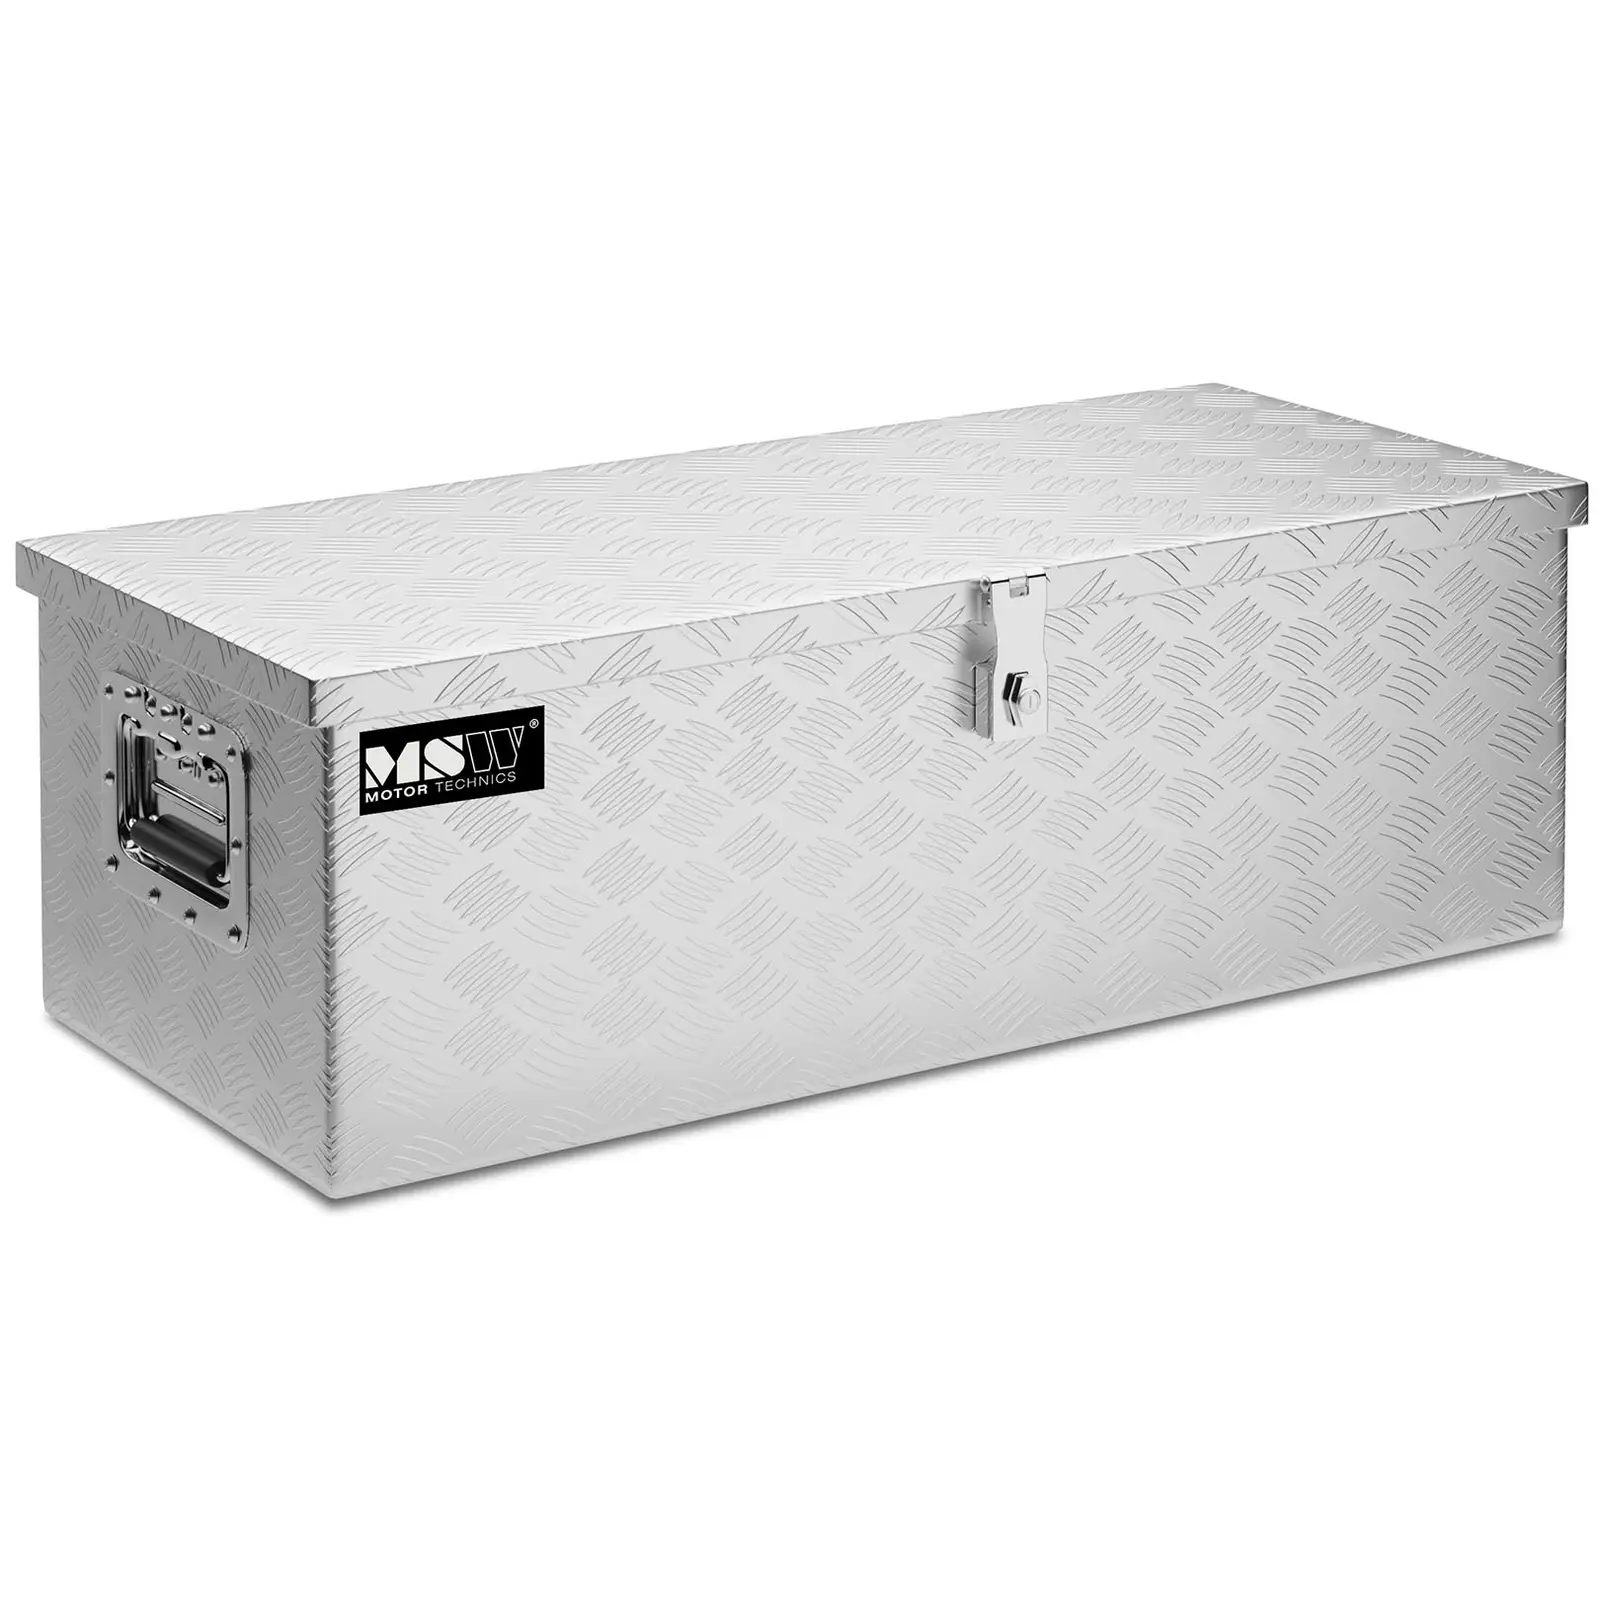 Aluminium Tool Box - 76.5 x 33.5 x 24 cm - 48 L